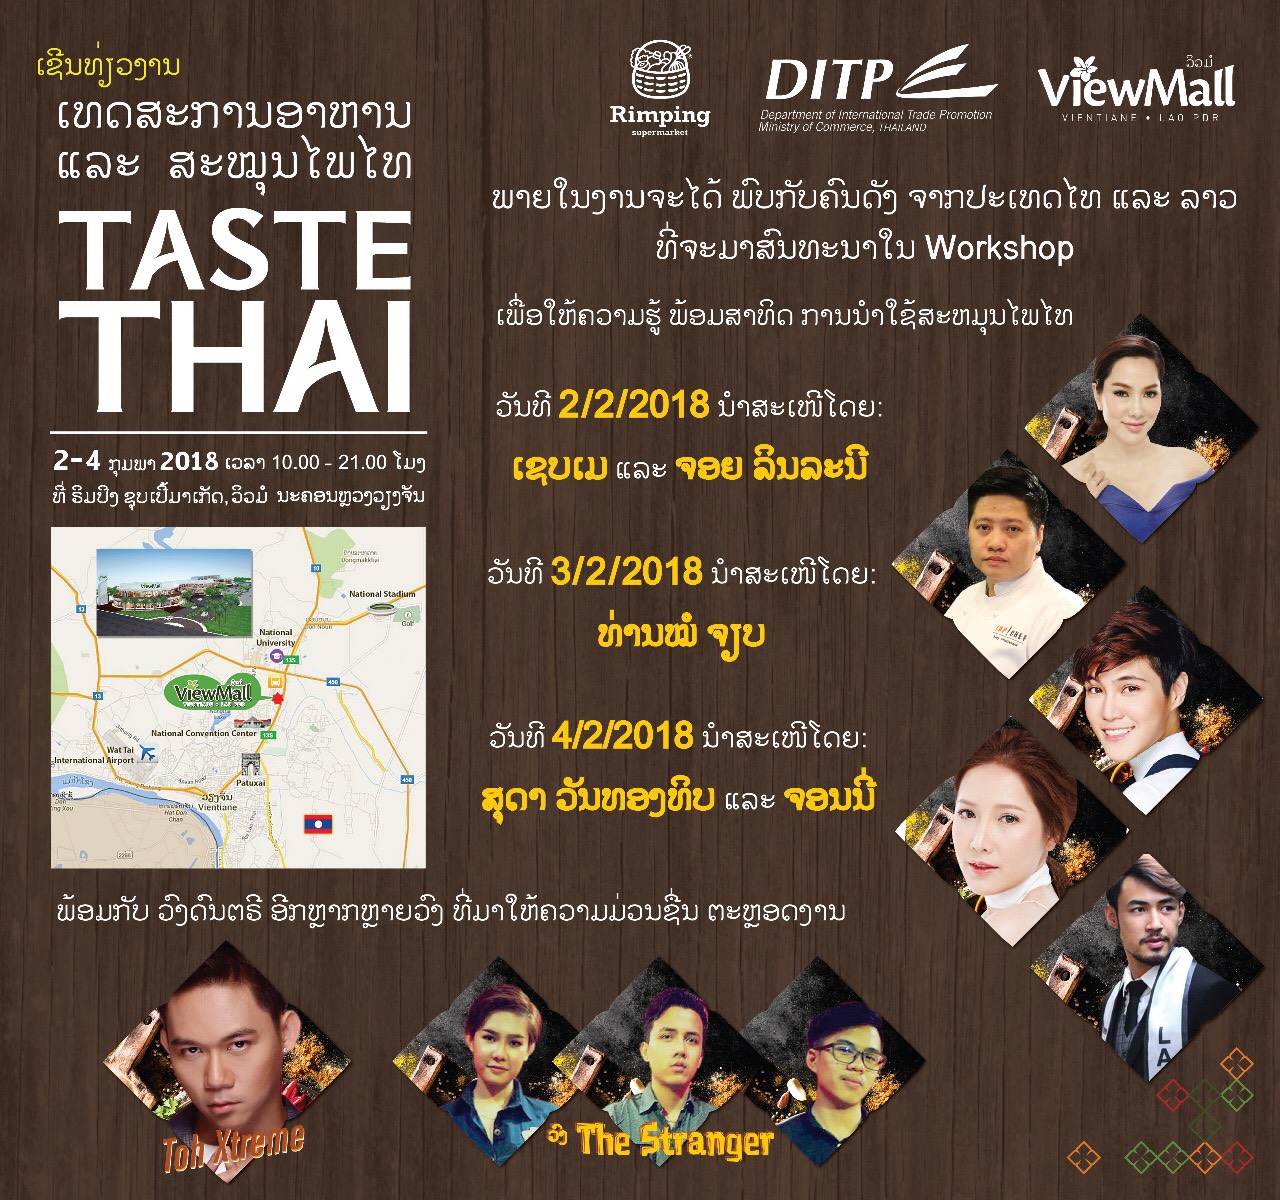 ขอเชิญเข้าร่วมงานเทศกาลอาหารและสมุนไพร "Taste Thai"